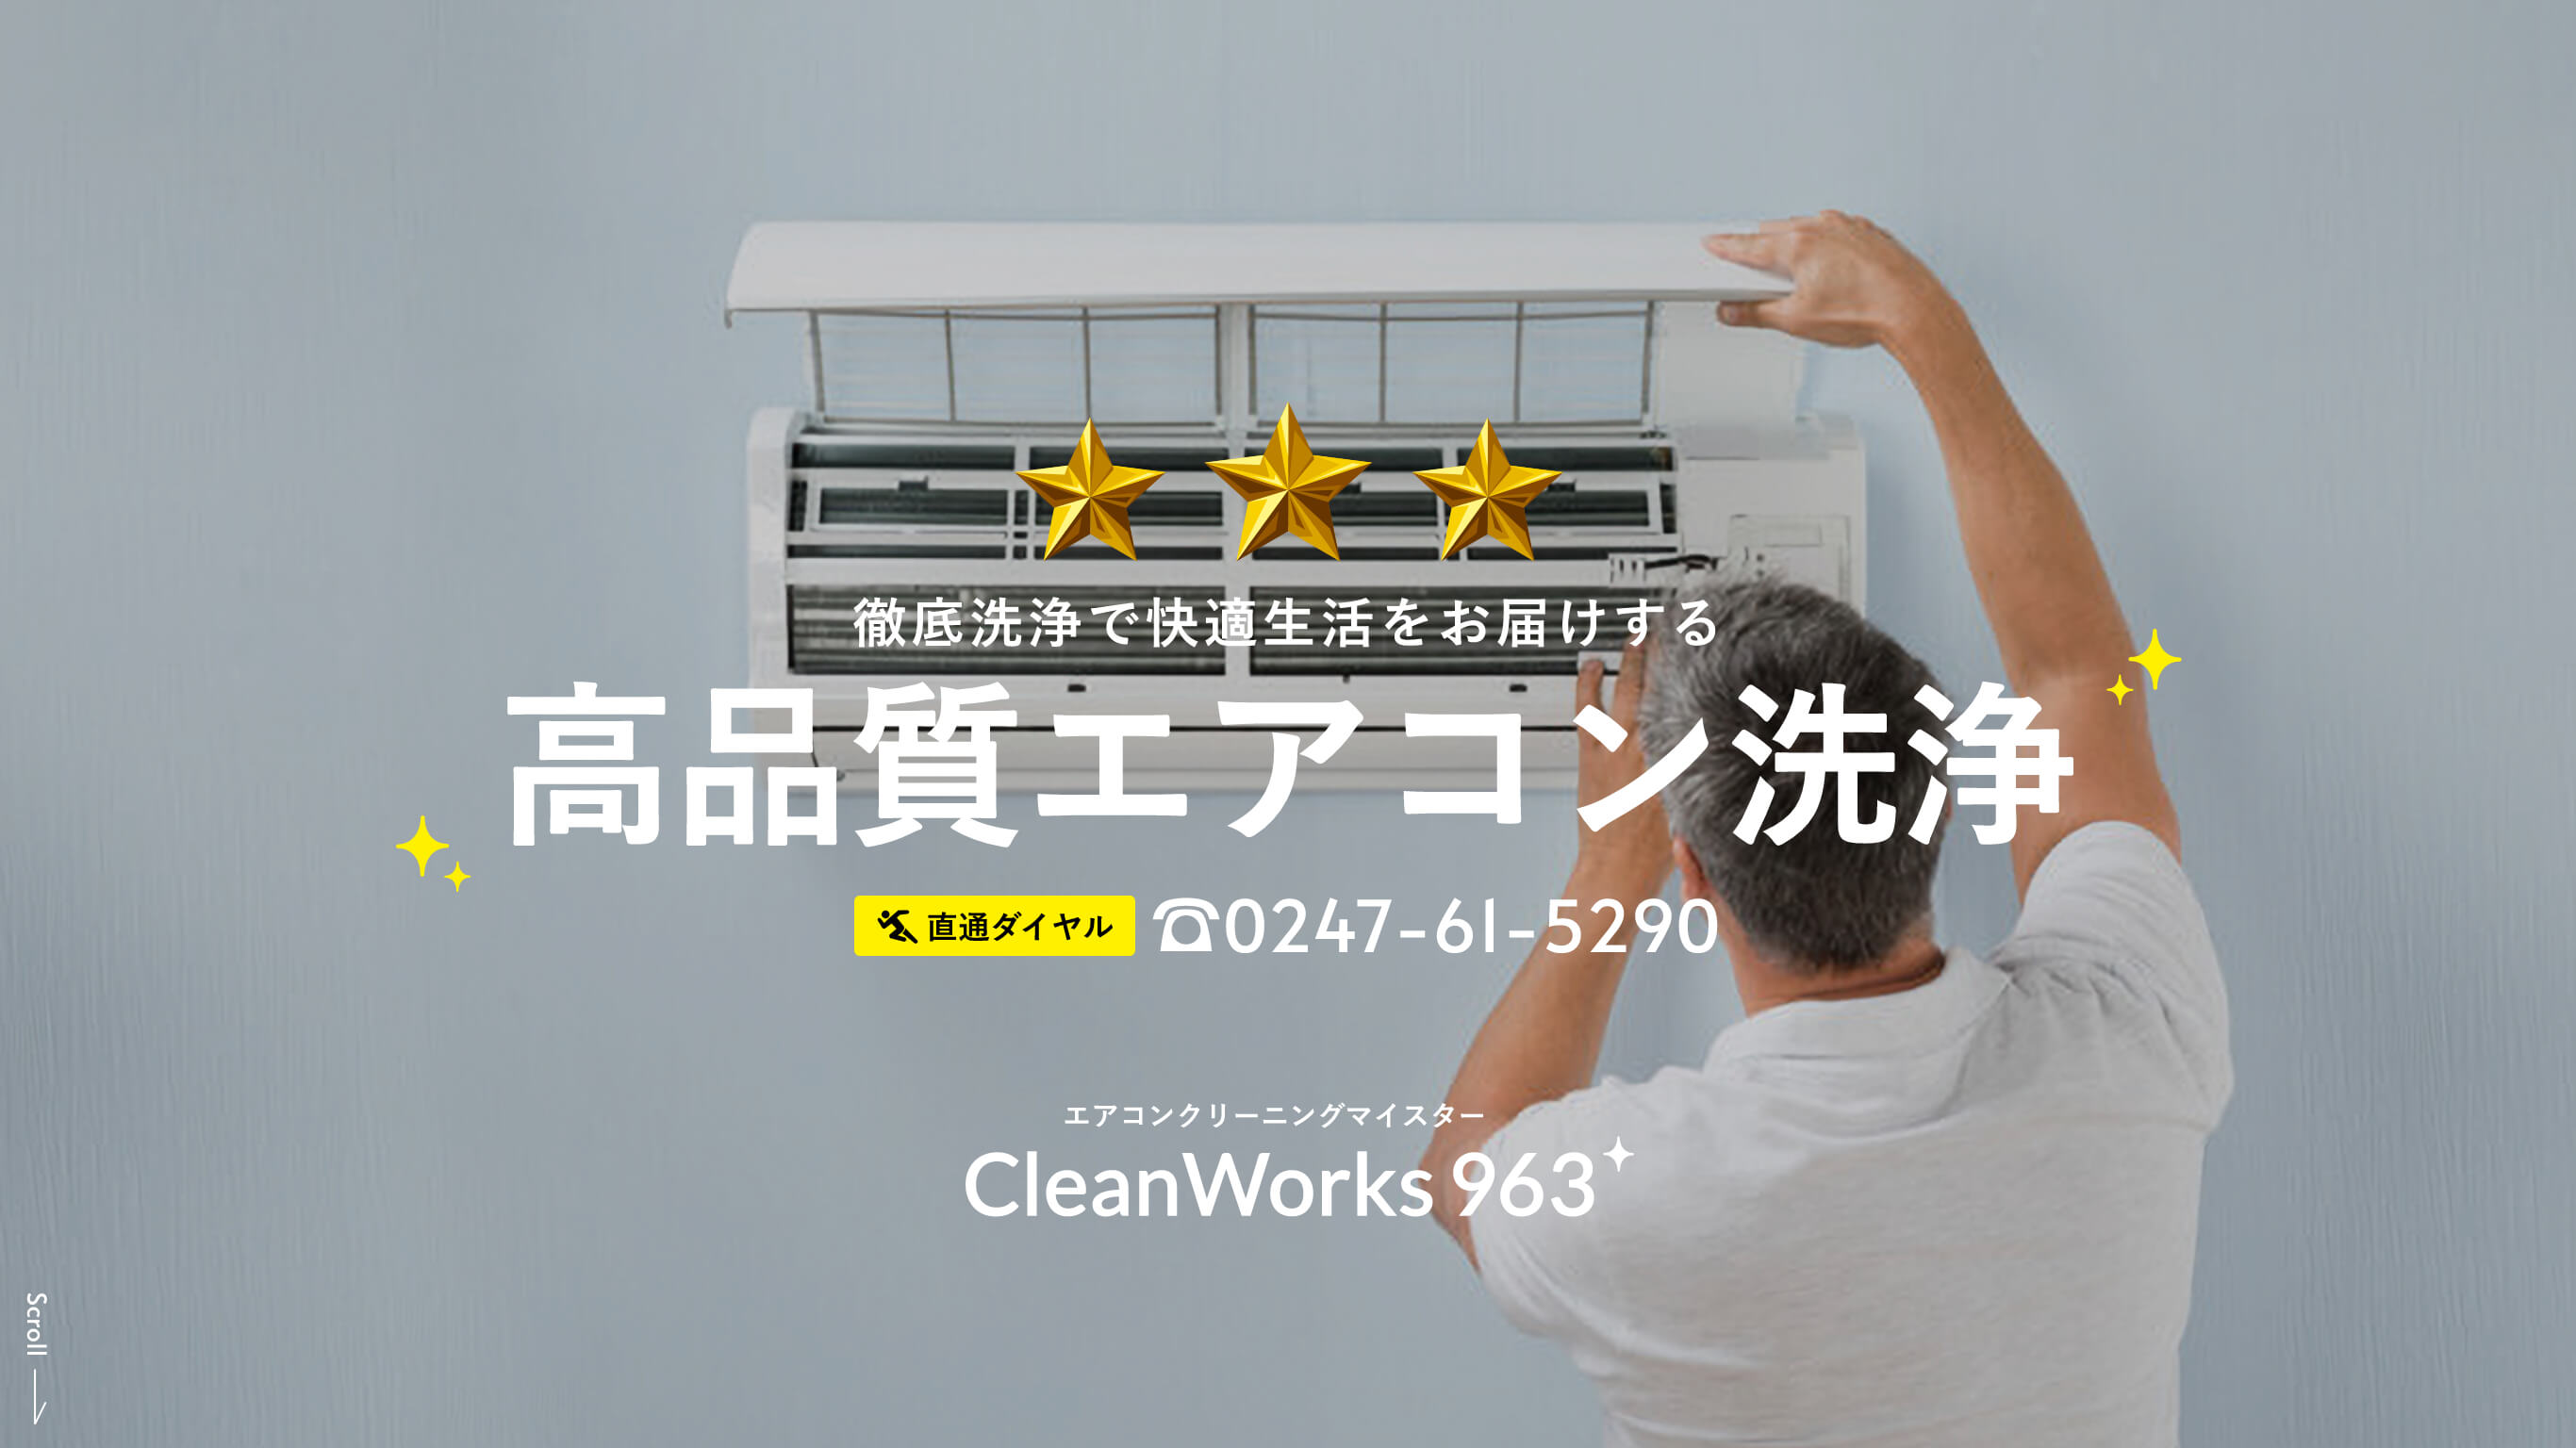 徹底洗浄で快適生活をお届けする 高品質エアコン洗浄 エアコンクリーニングマイスター CleanWorks963